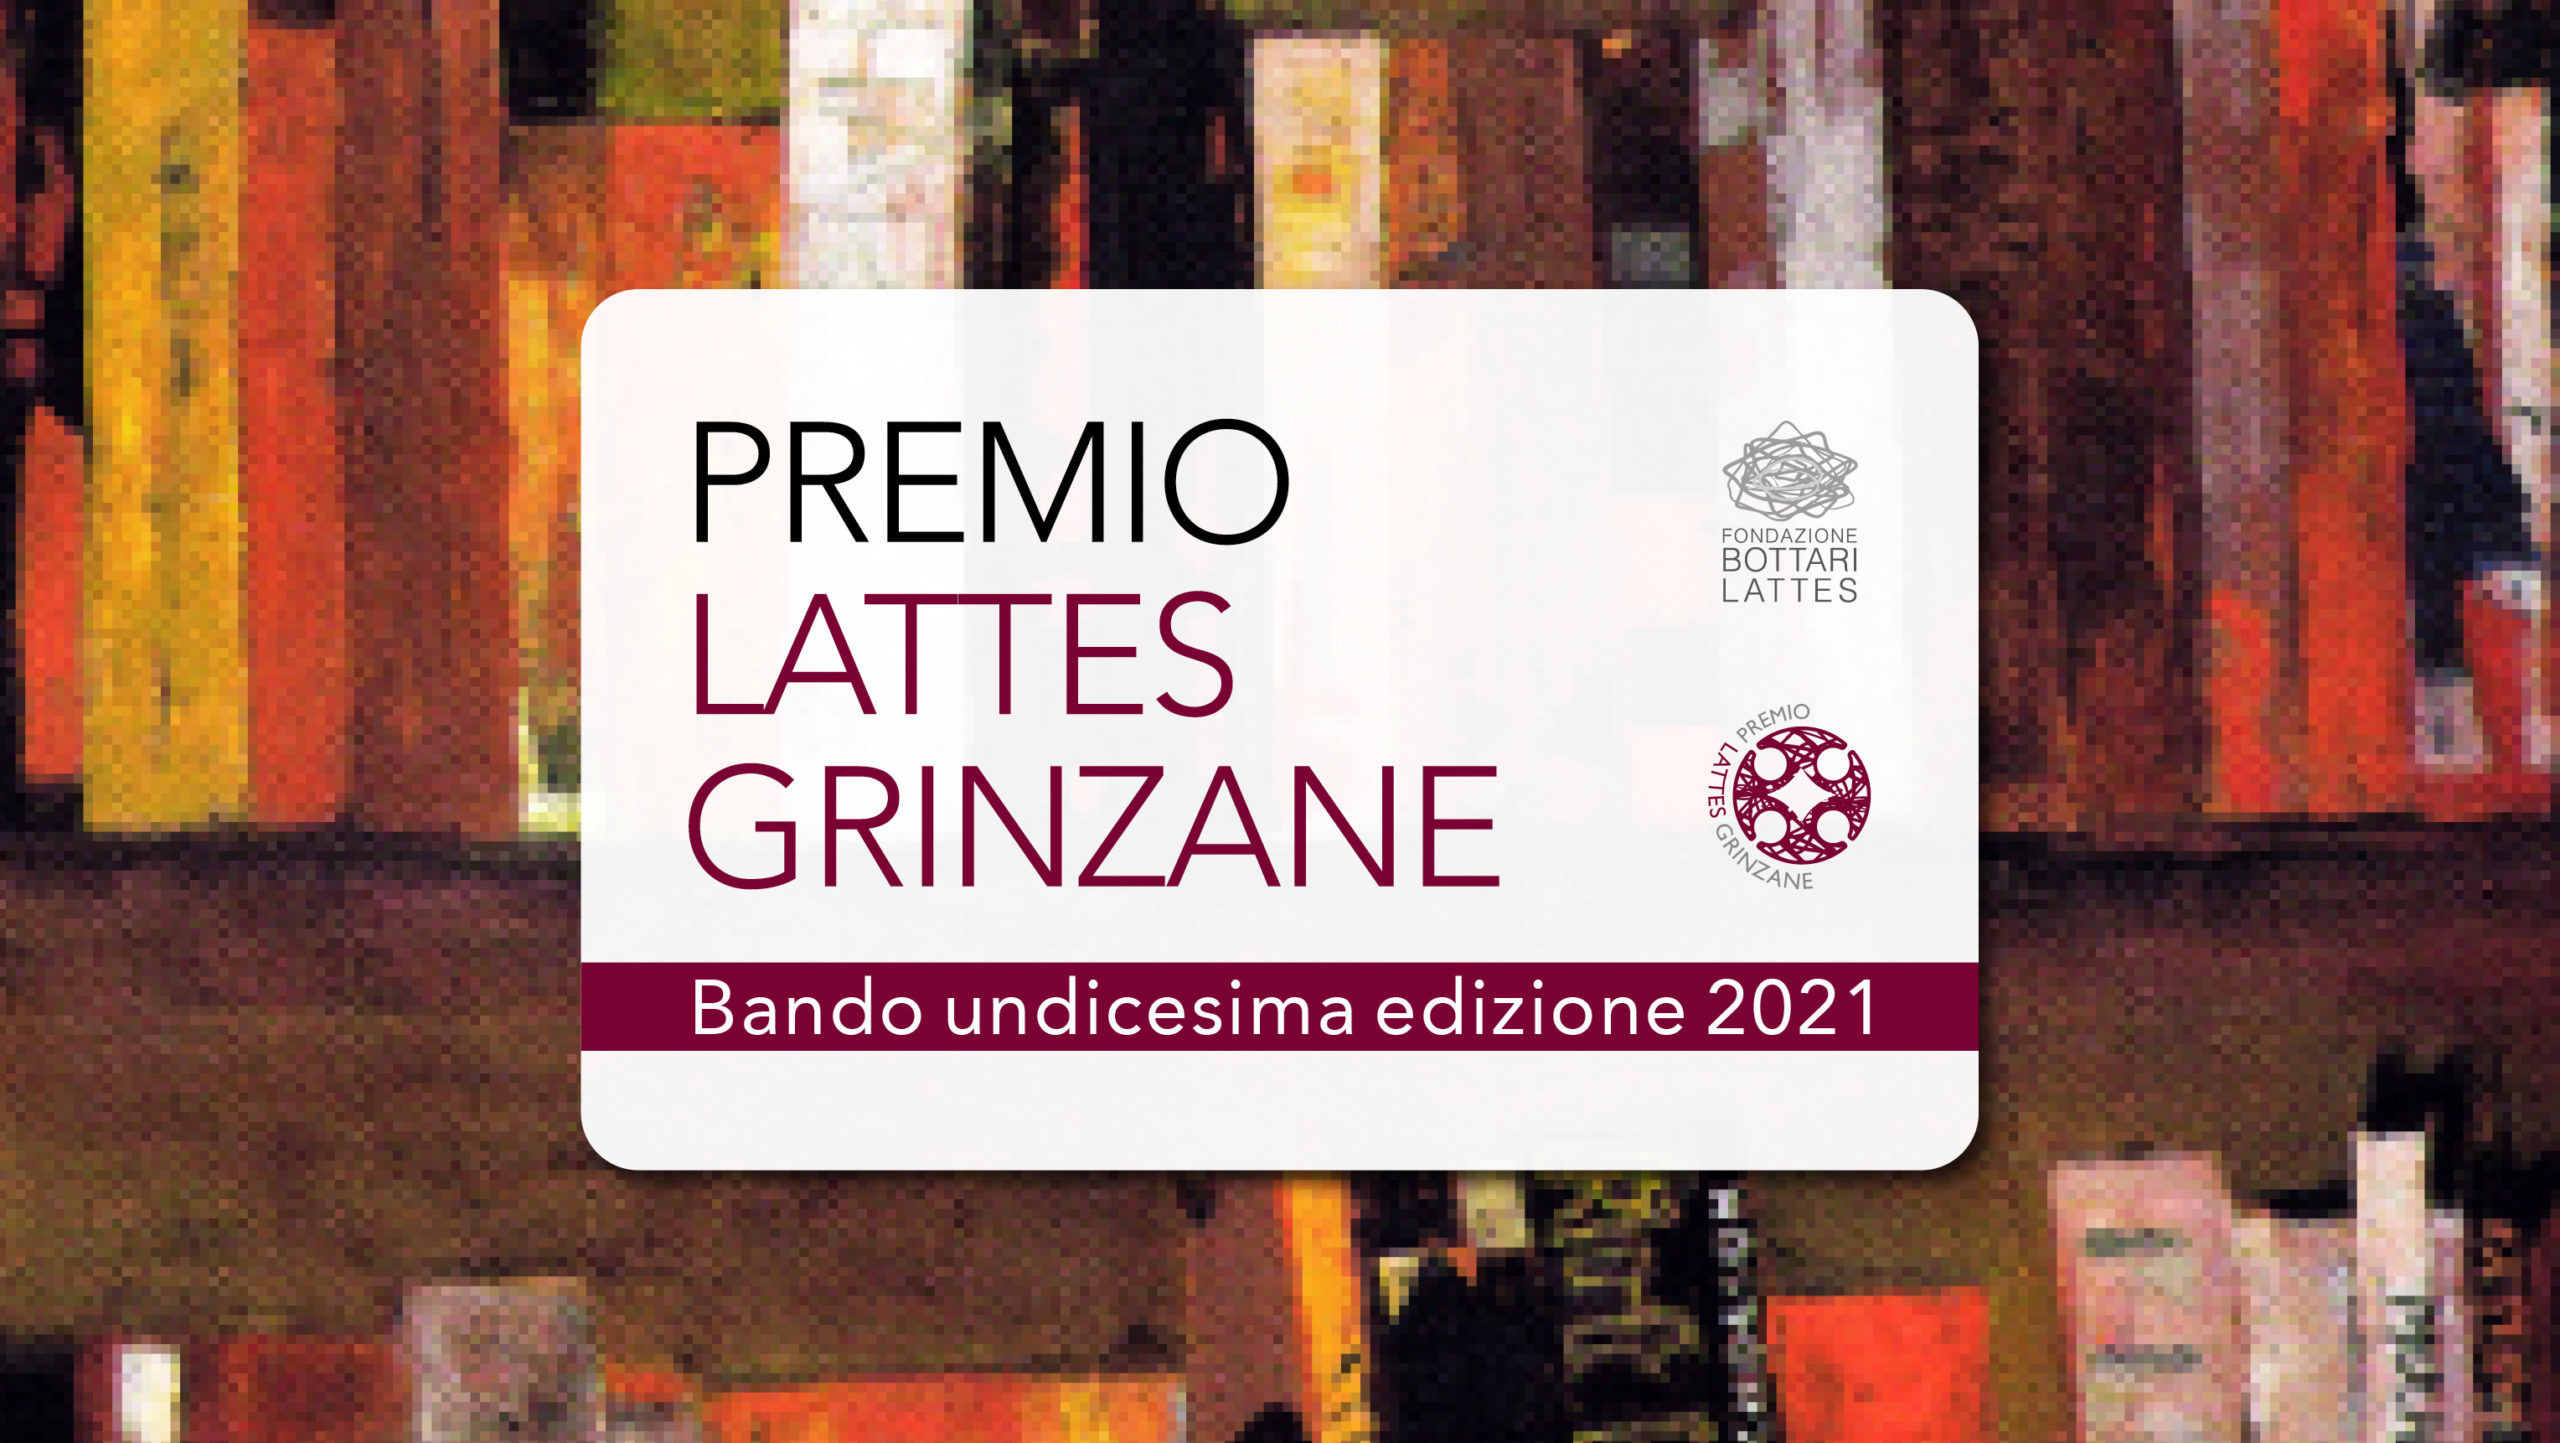 Bando XI edizione Premio Lattes Grinzane